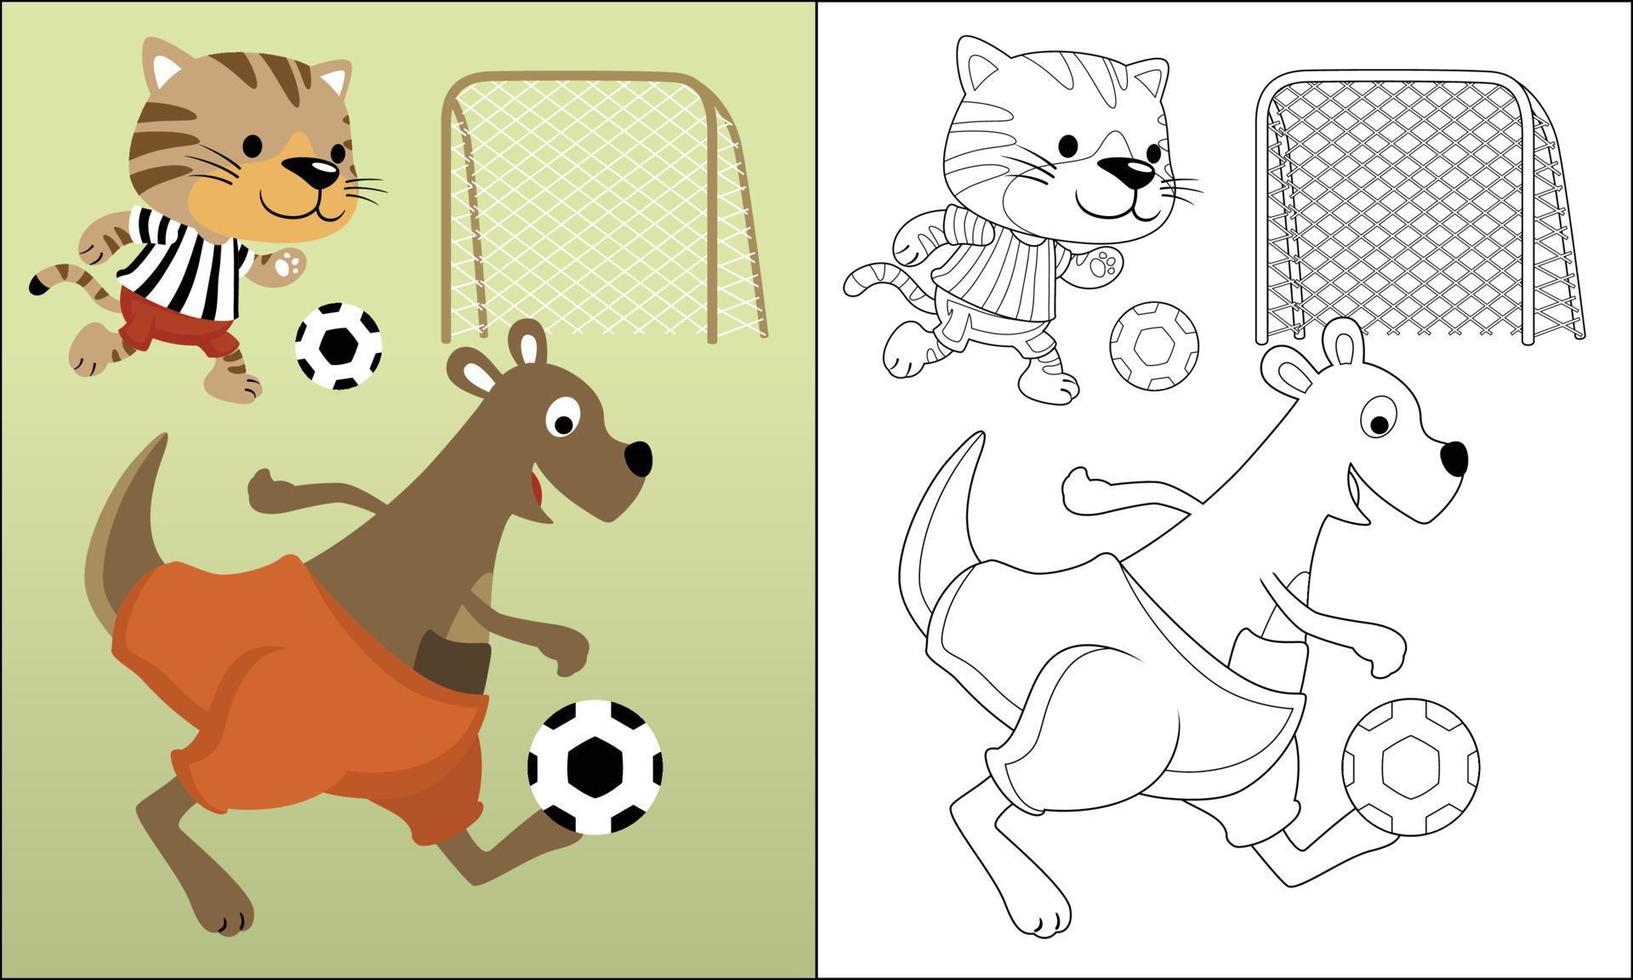 coloration livre de marrant chat avec kangourou en jouant football, vecteur dessin animé illustration